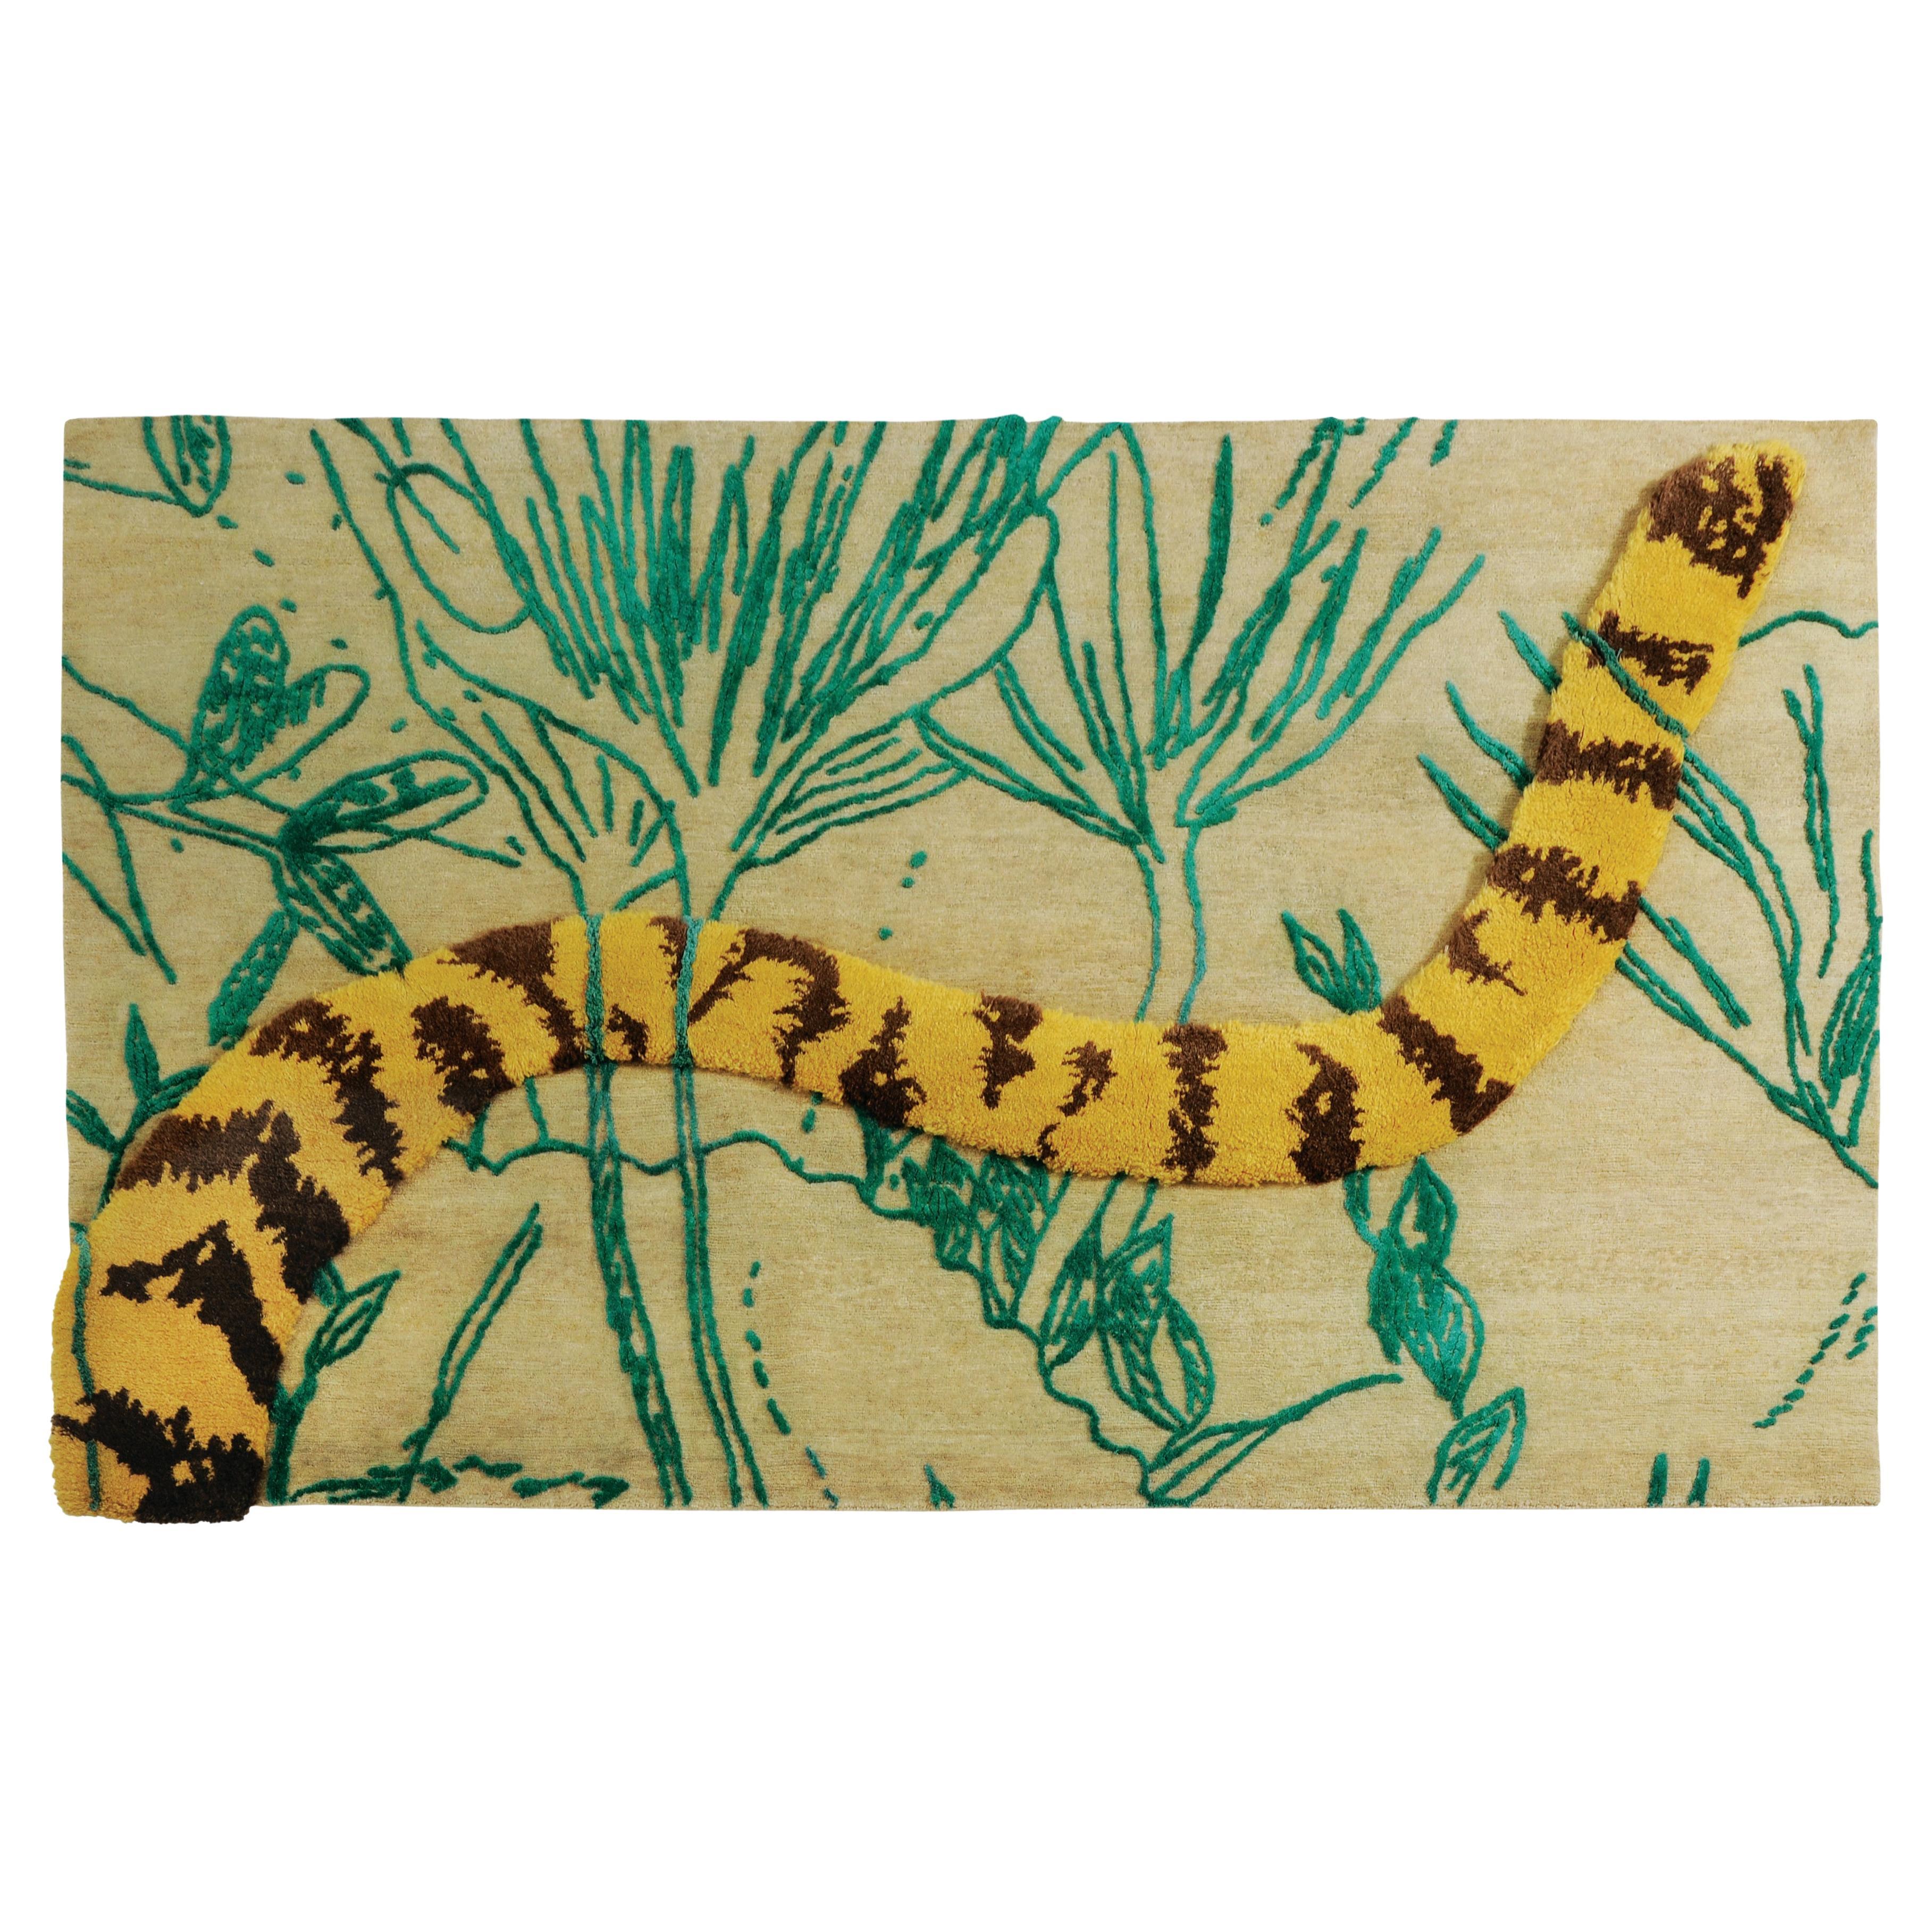 Elusive Tiger - Nuala Goodman Moderner Design-Teppich aus Wolle und Baumwolle, handgeknüpft